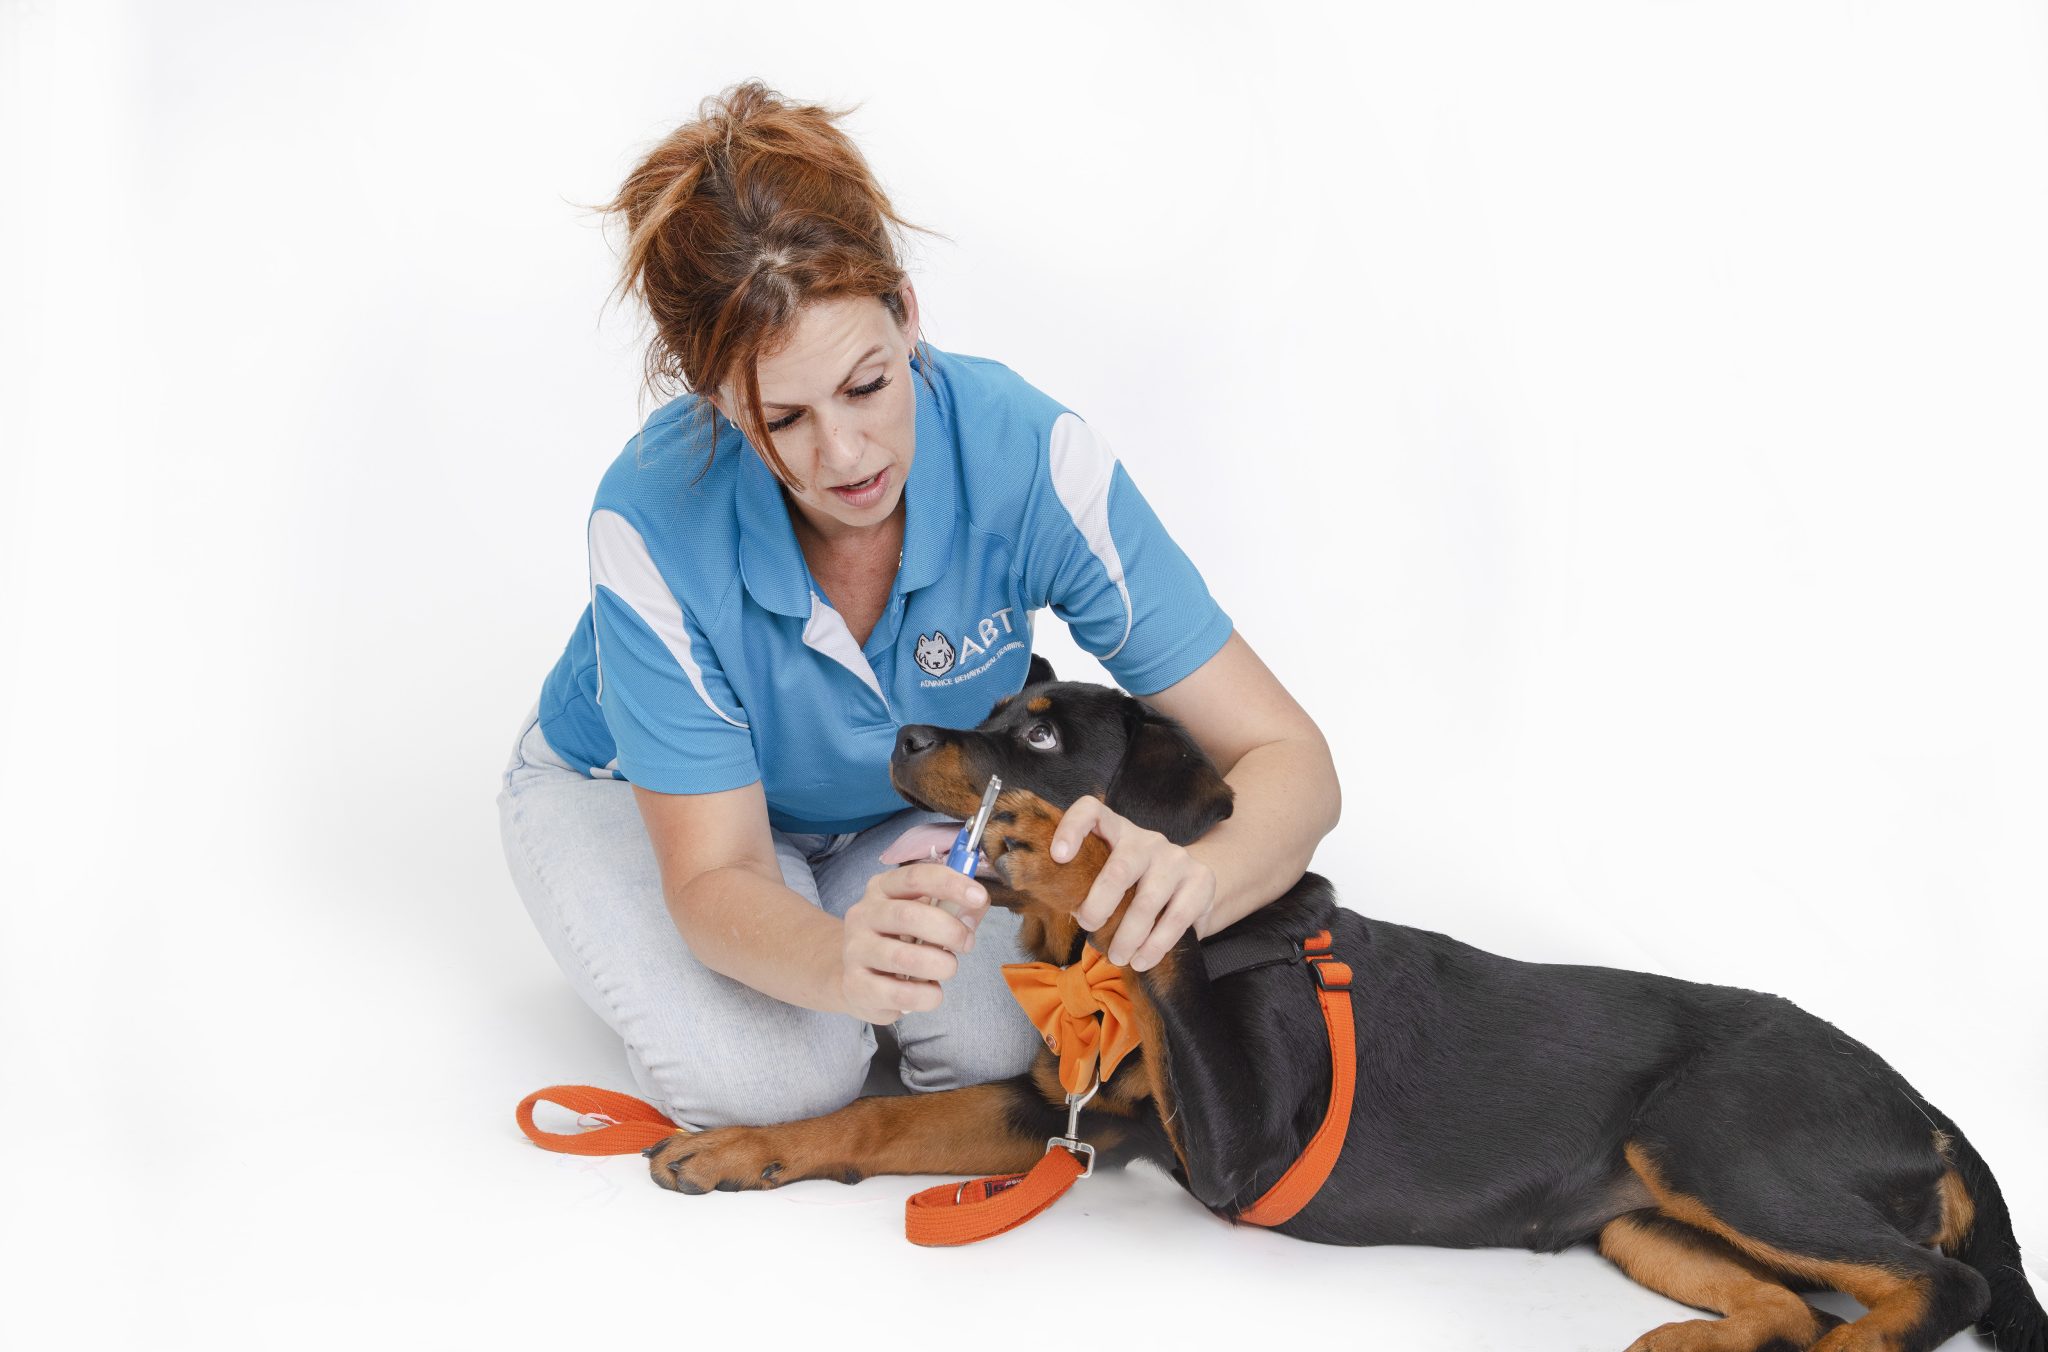 ABT-Plus Online dog training & Behaviour services